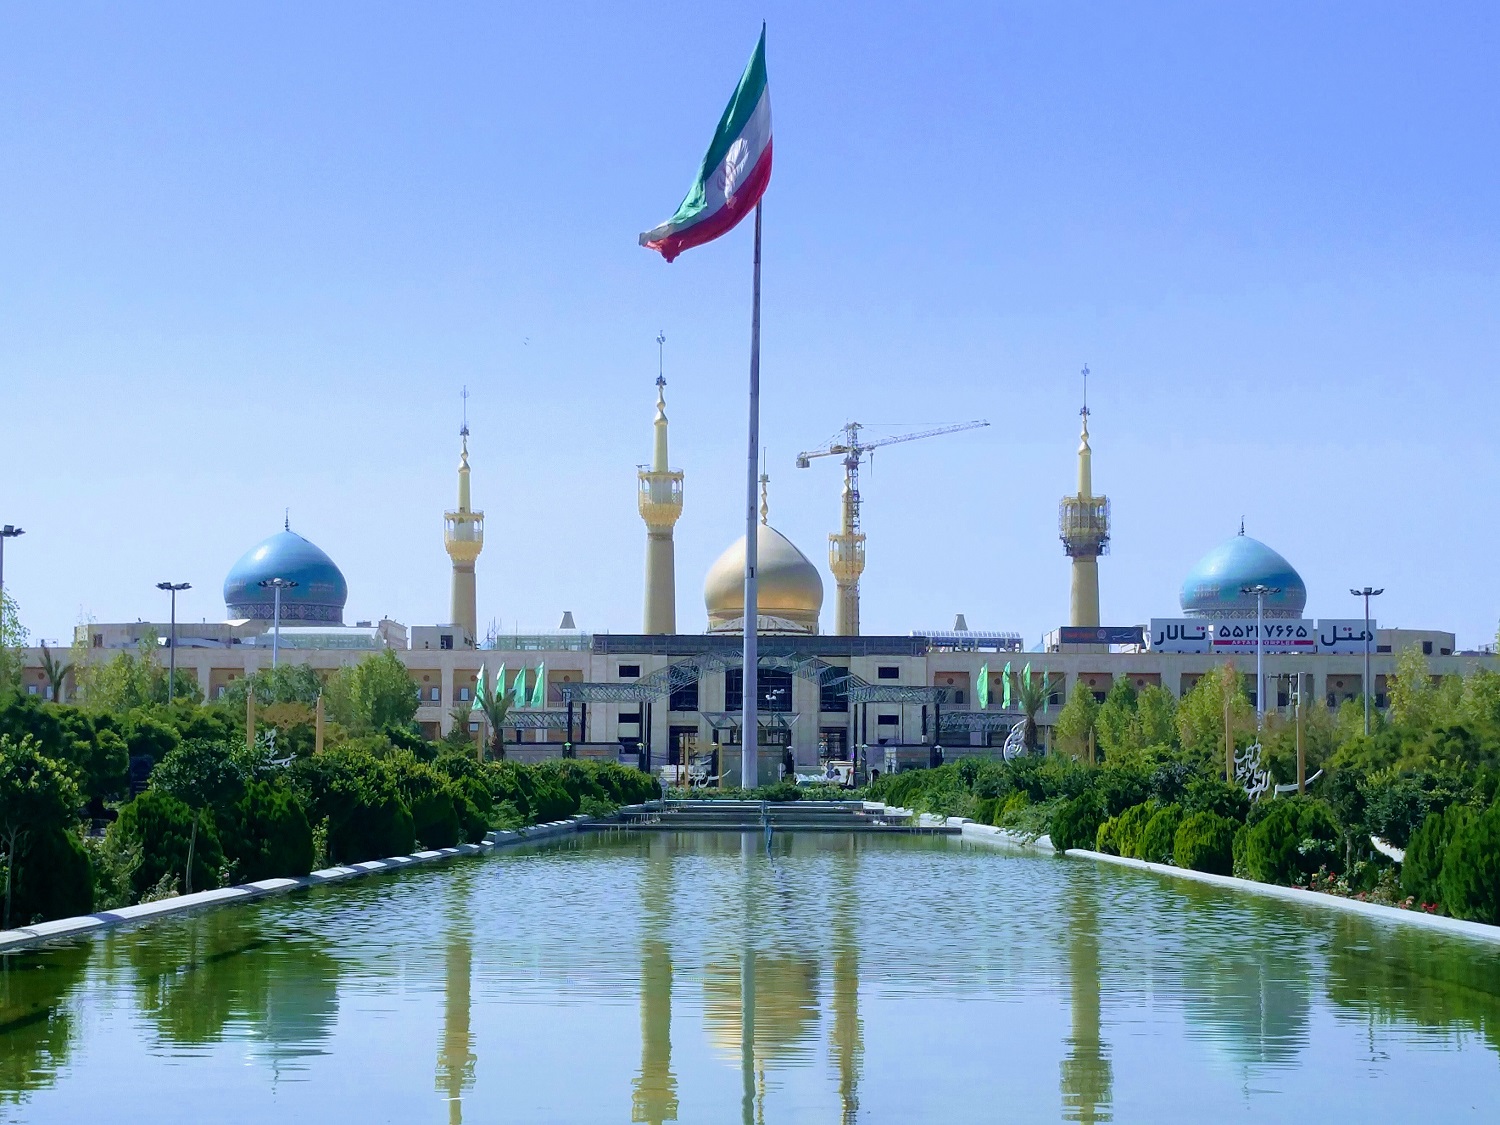 1/ 12 伊朗首都德黑兰,一个拥有1500万居民的大城市,照片为戈勒斯坦